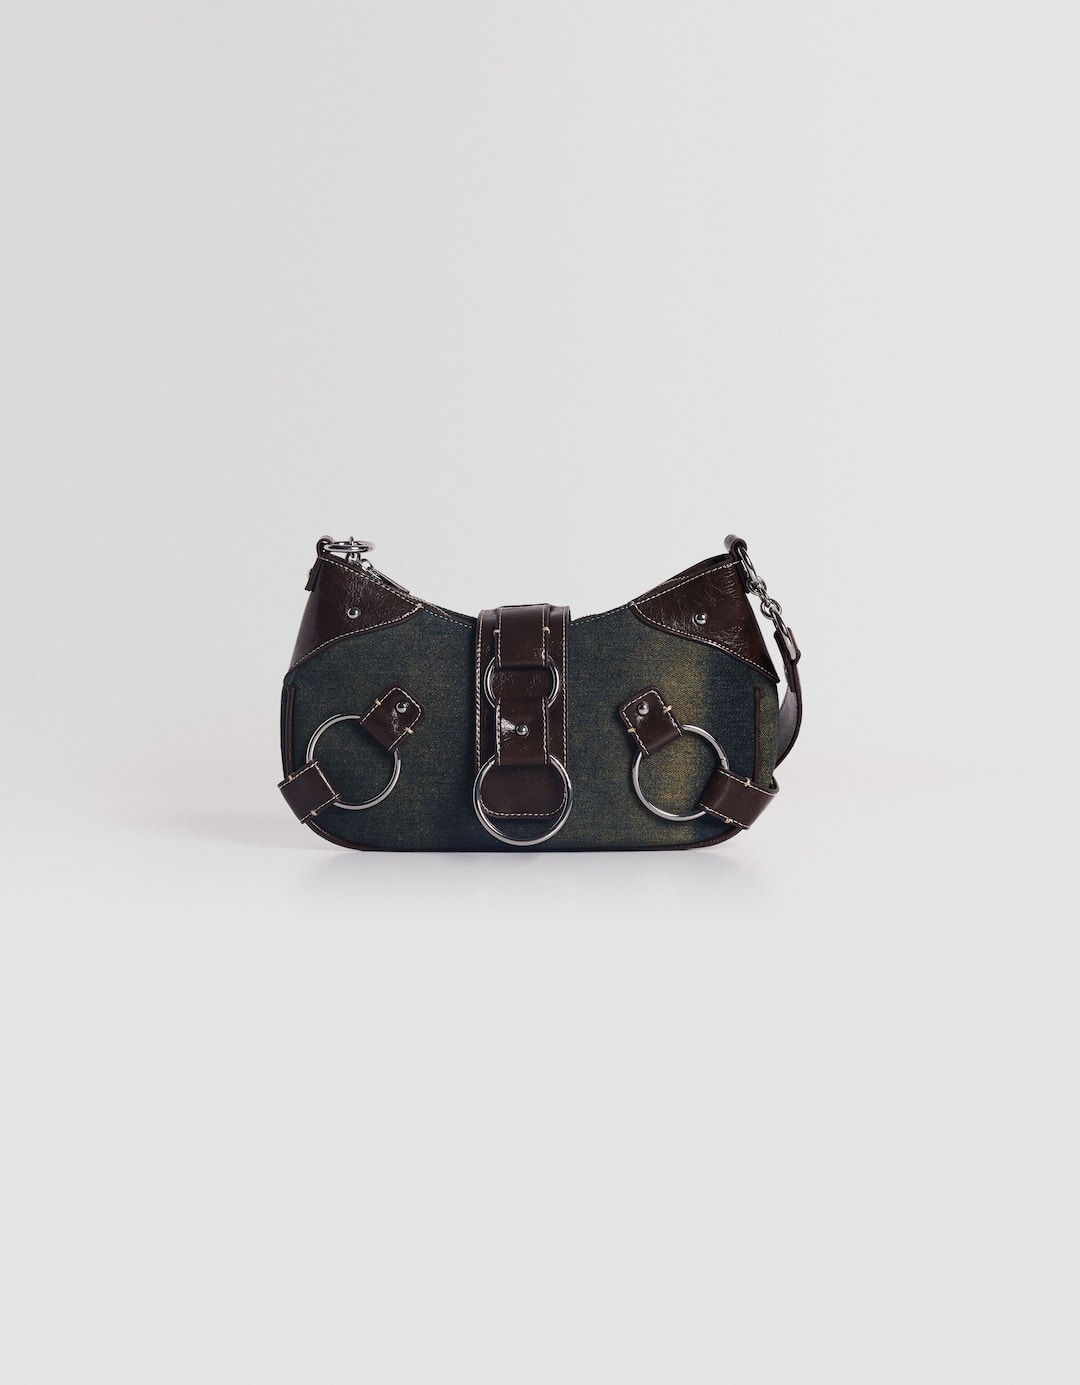 Contrast vintage shoulder bag with rings